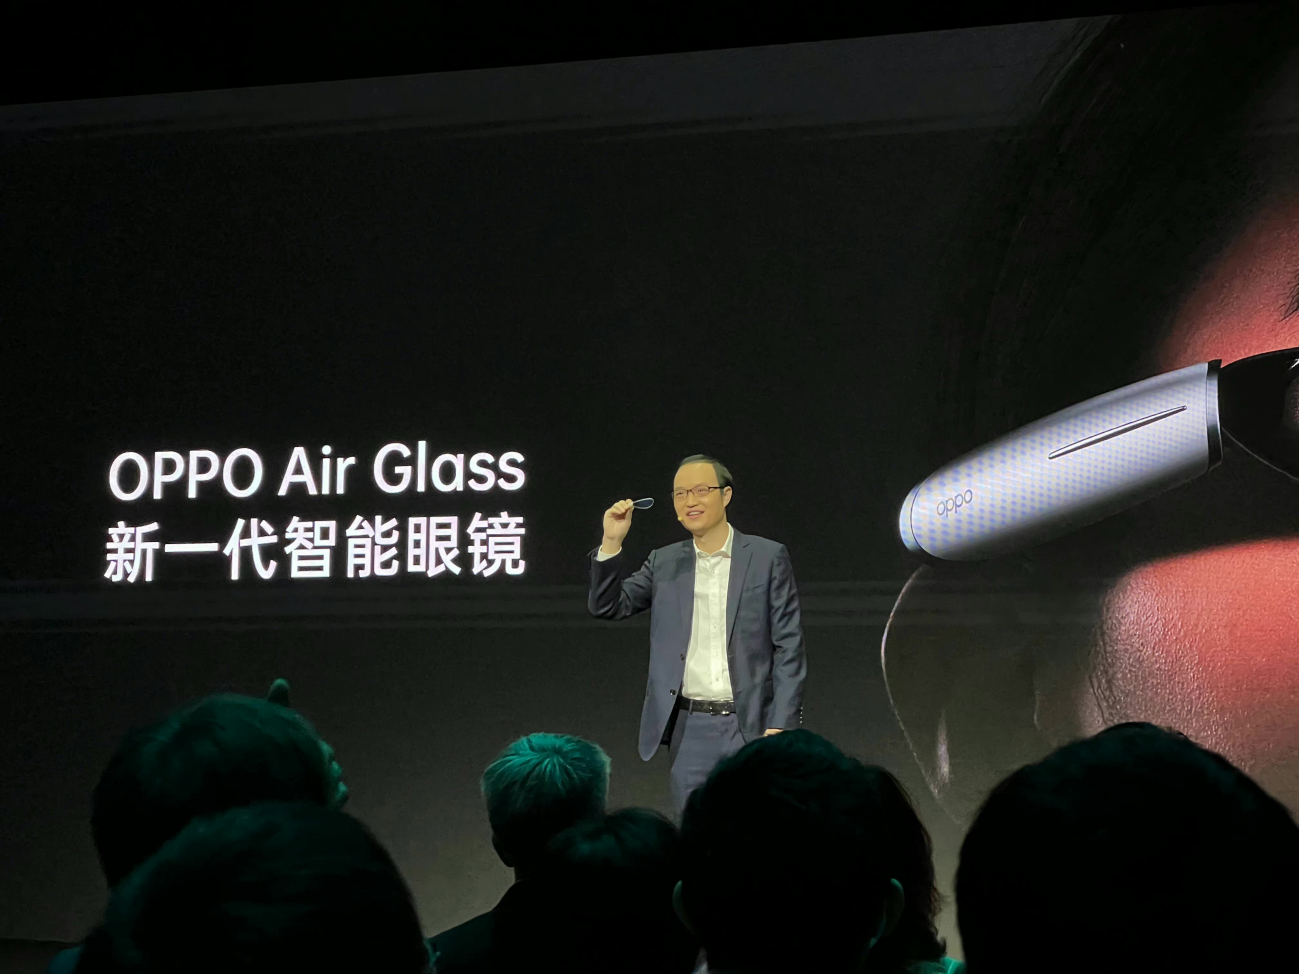 明年春季发售!OPPO新一代智能眼镜Air Glass面世，兼顾轻便实用